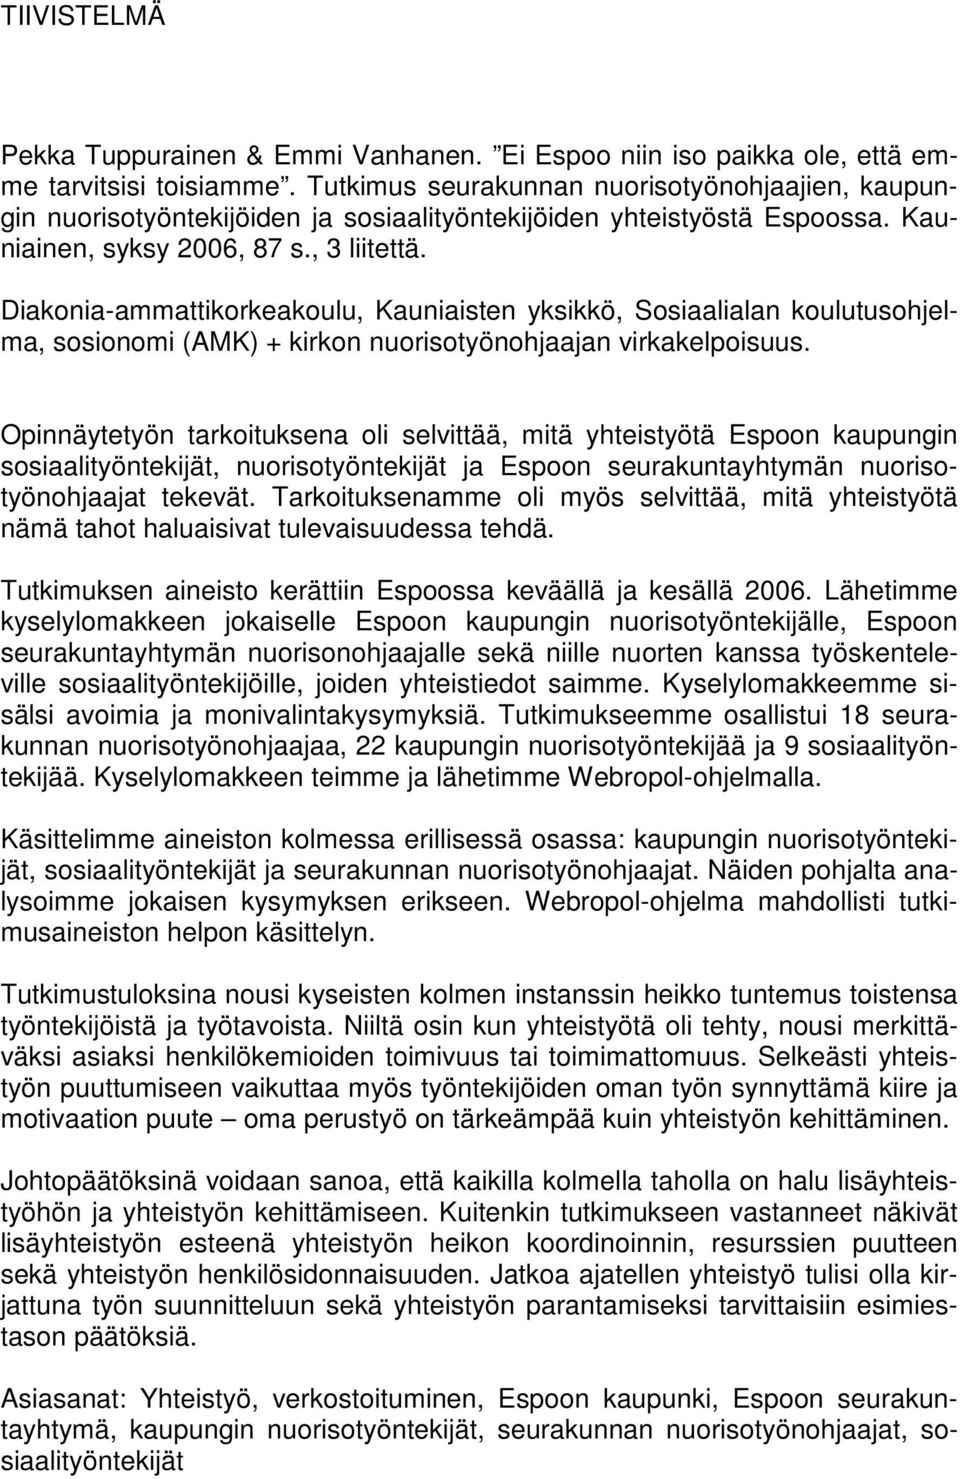 Diakonia-ammattikorkeakoulu, Kauniaisten yksikkö, Sosiaalialan koulutusohjelma, sosionomi (AMK) + kirkon nuorisotyönohjaajan virkakelpoisuus.